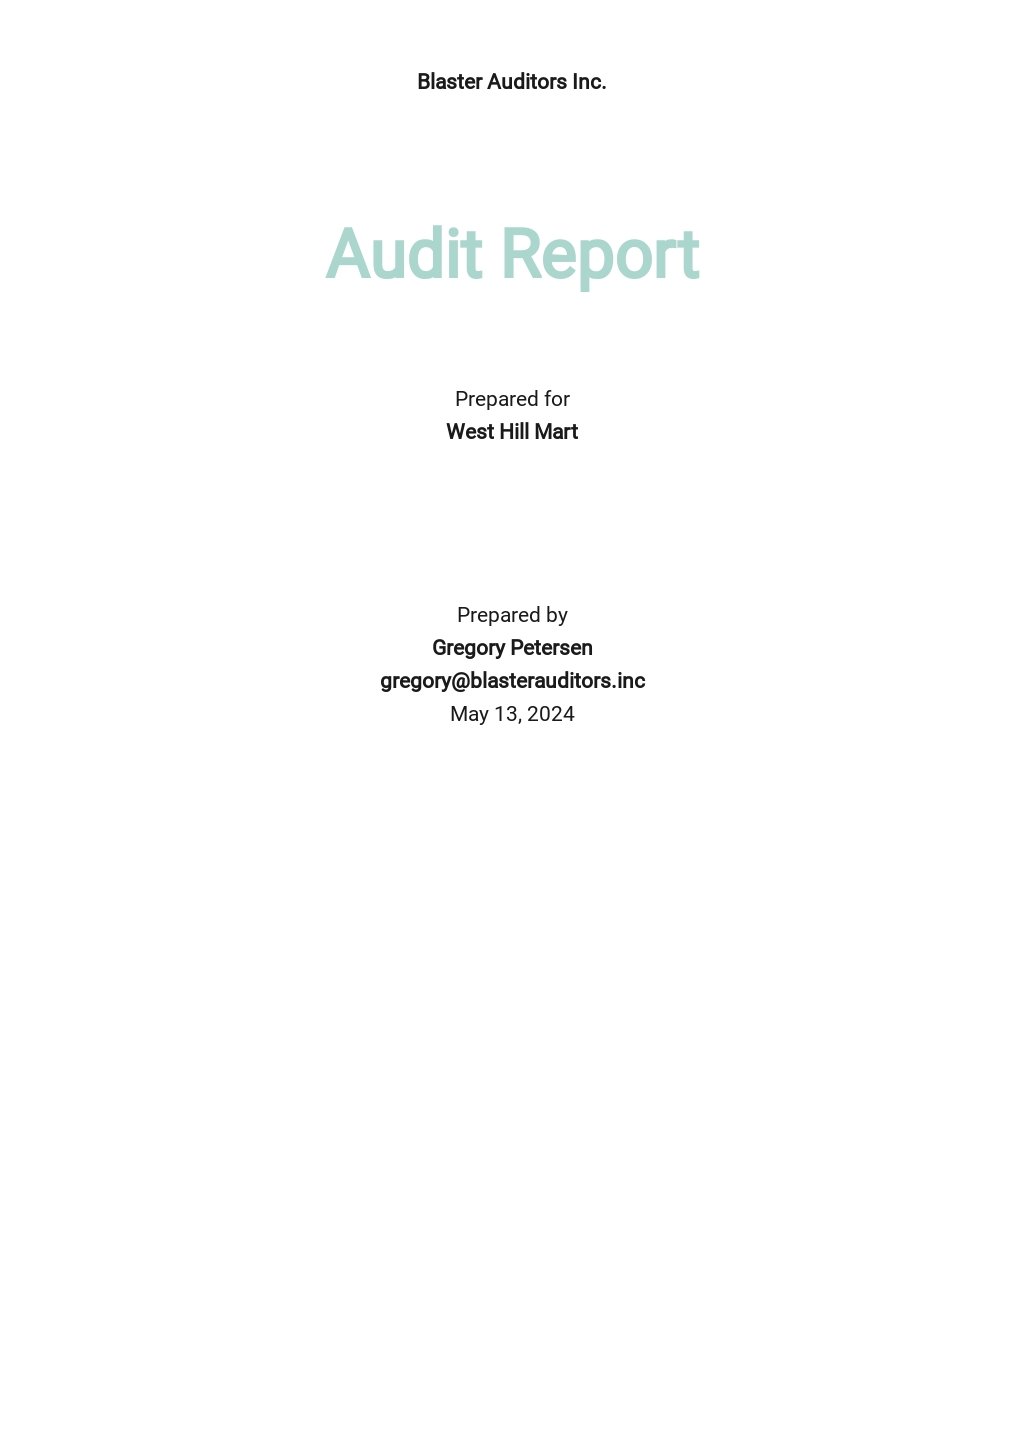 Sample Audit Report Template.jpe